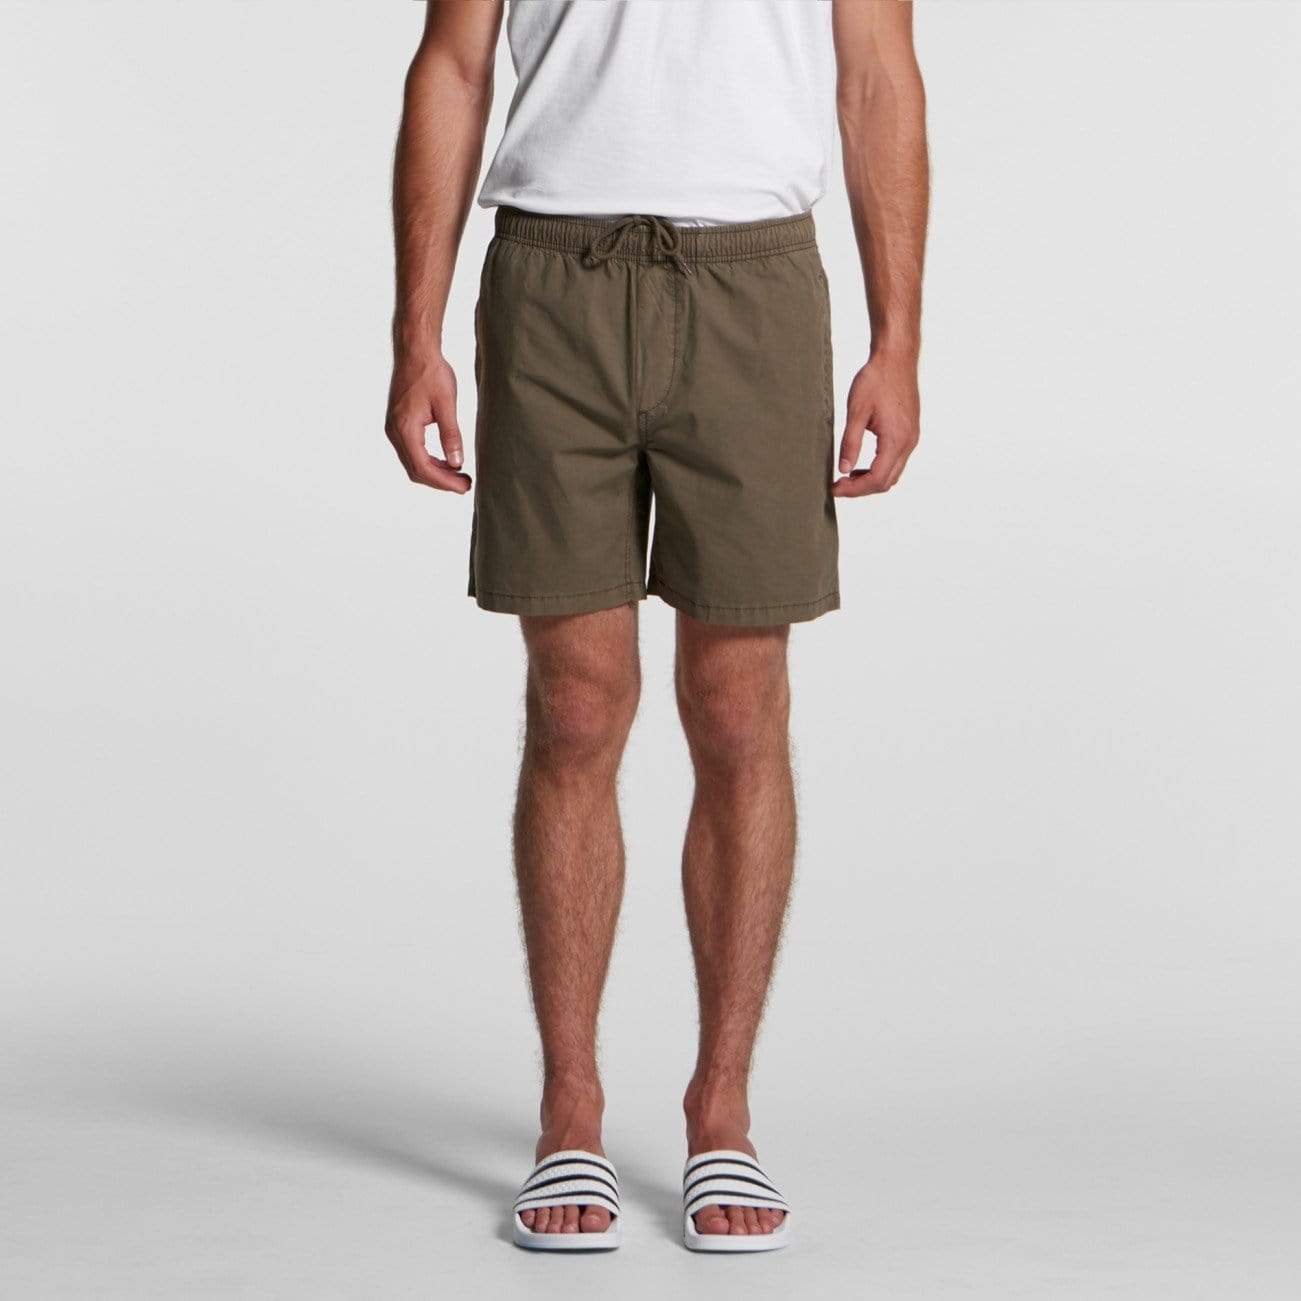 As Colour Active Wear As Colour Men's beach shorts 5903